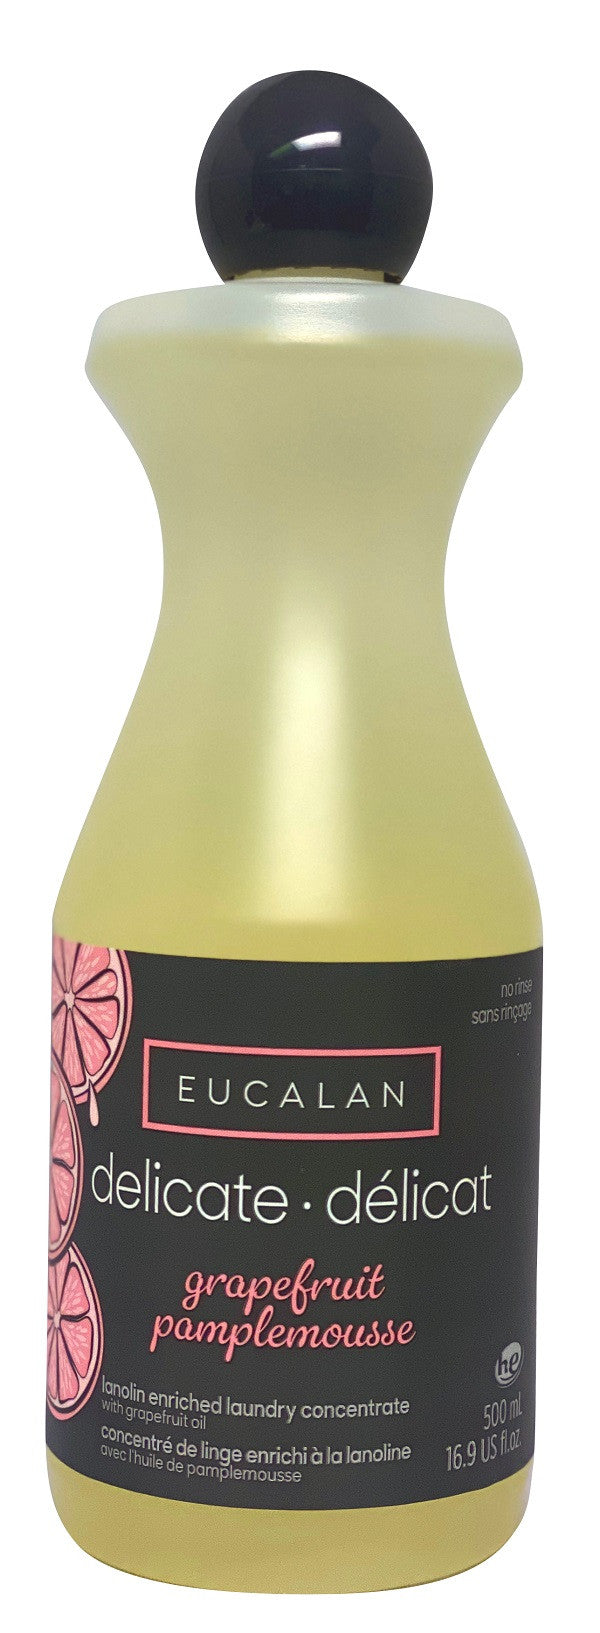 Savon sans rinçage Eucalan, lavage délicat (concentré enrichi de lanoline), 500 ml